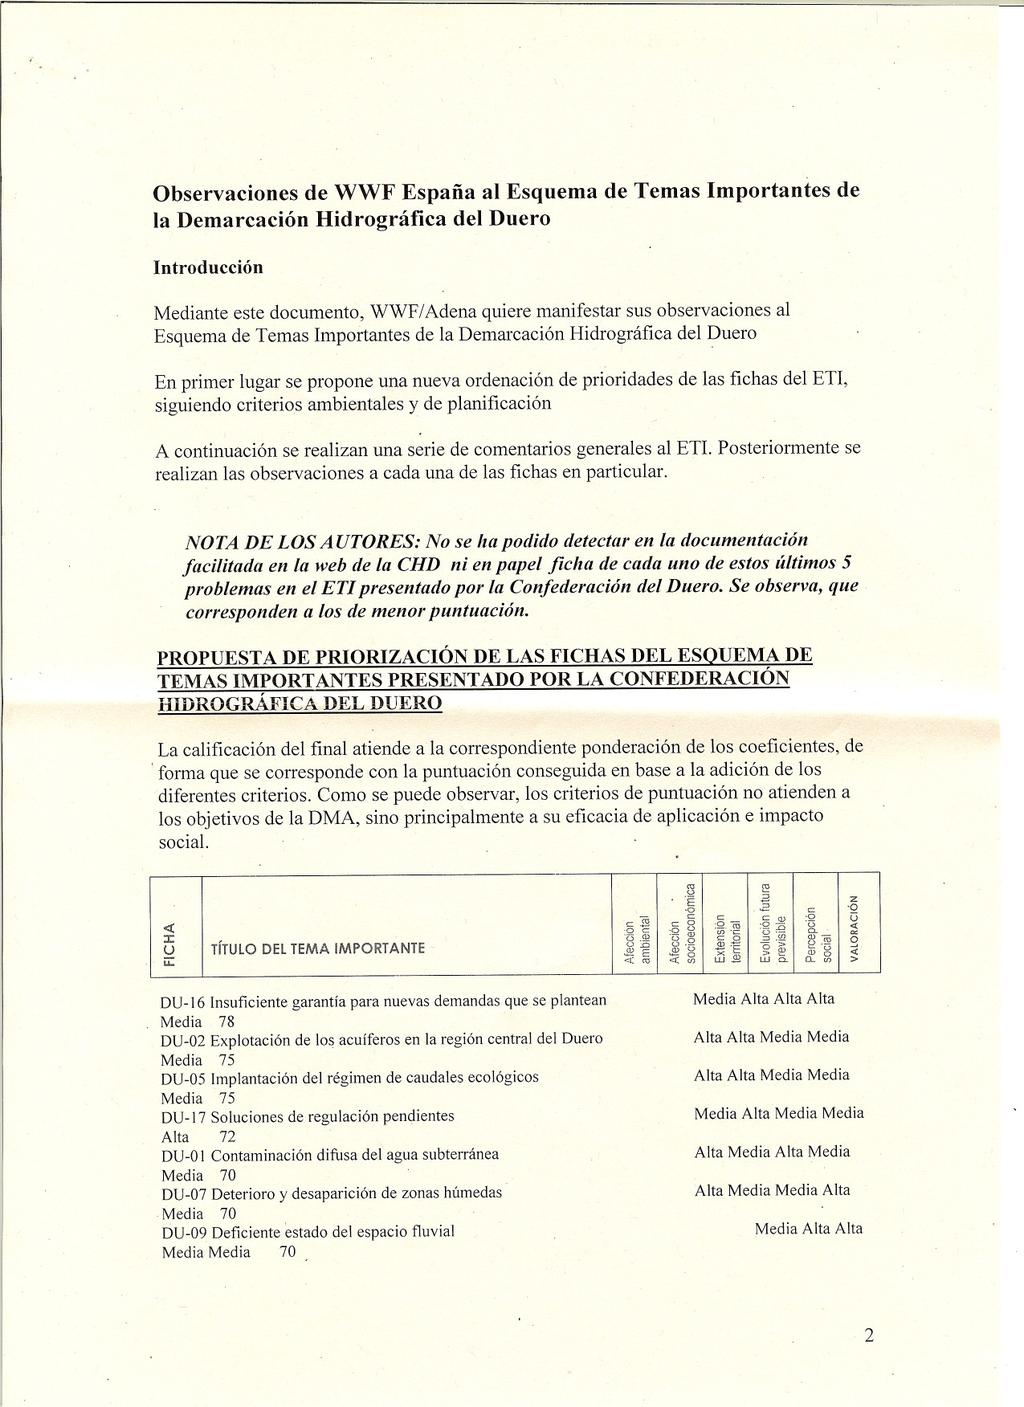 Observaciones de WWF España al Esquema de Temas Importantes la Demarcación Hidrográfica del Duero de Introducción Mediante este documento, WWF/Adena quiere manifestar sus observaciones al Esquema de